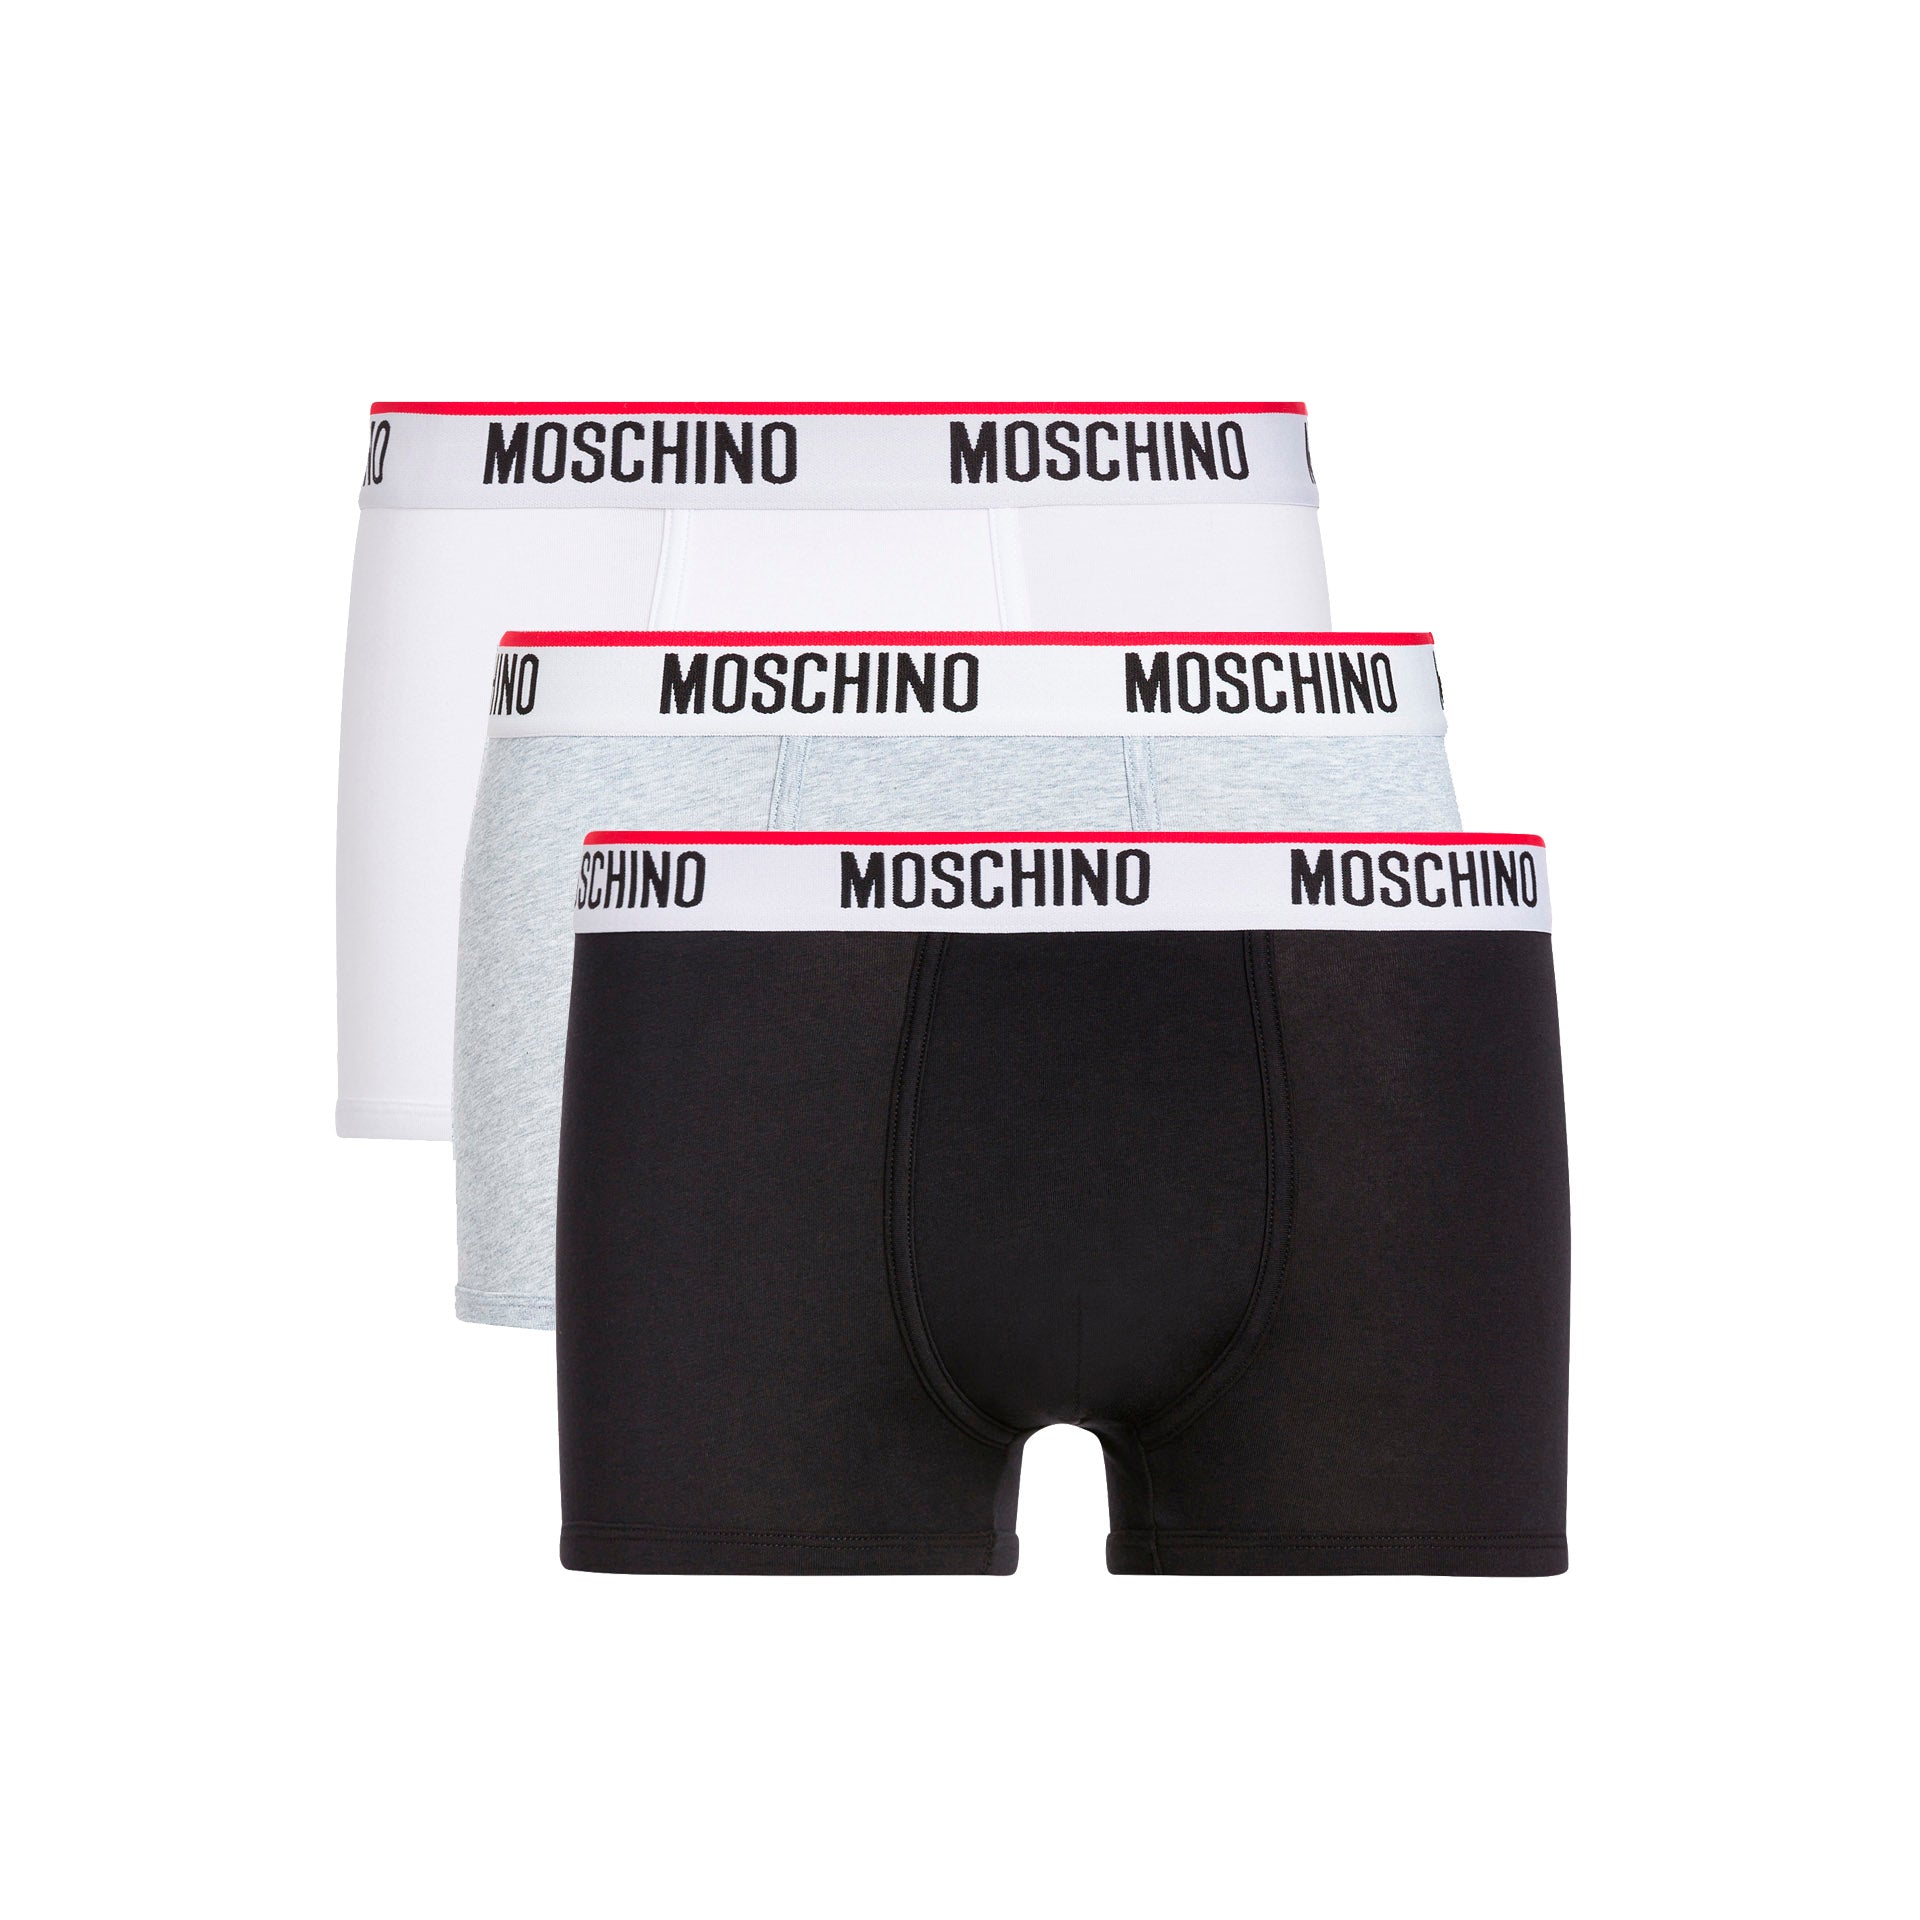 Moschino Boxer Algodão Branco/Preto/Cinza - Pack 3